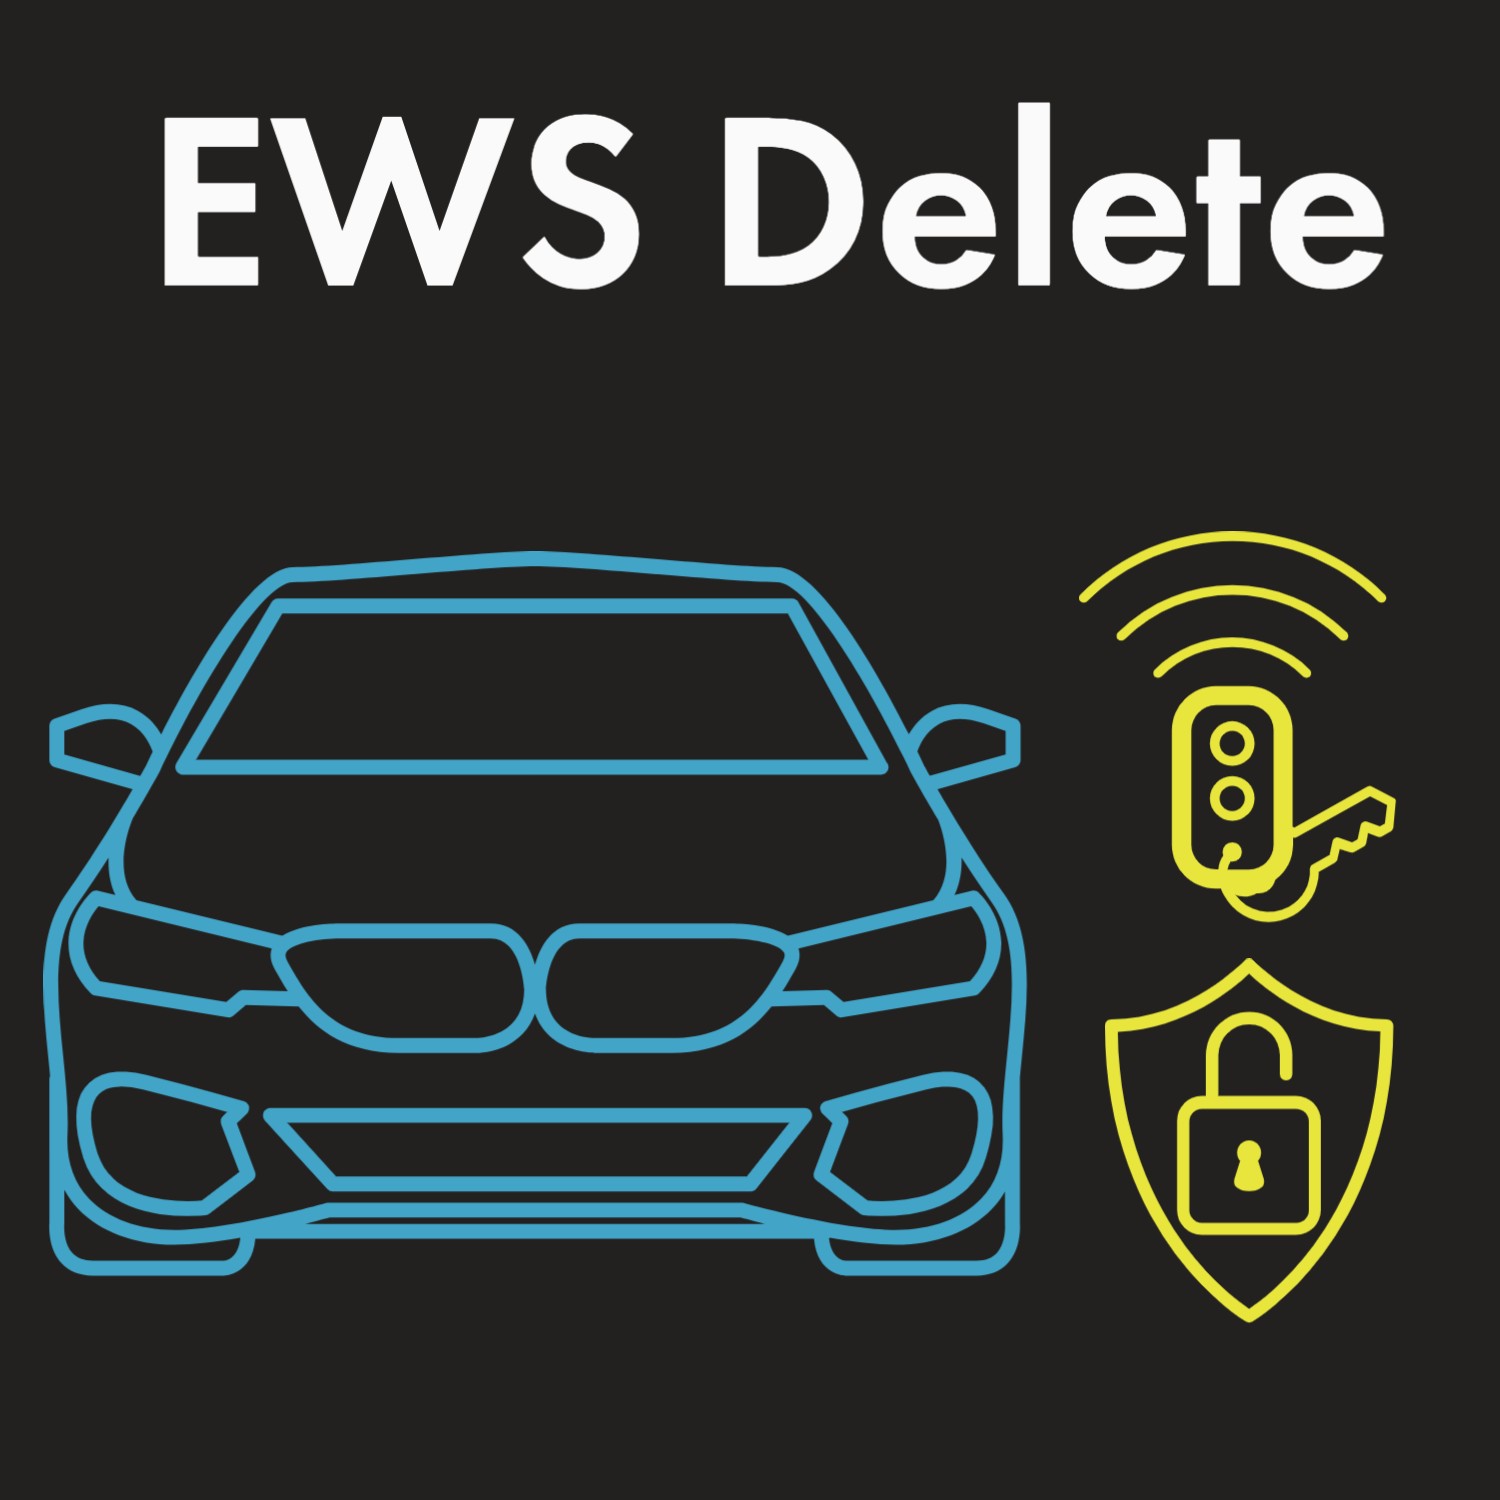 EWS Delete - BMW E38 740i 740iL - M60B40 M60 4.0L V8 - M3.3 484